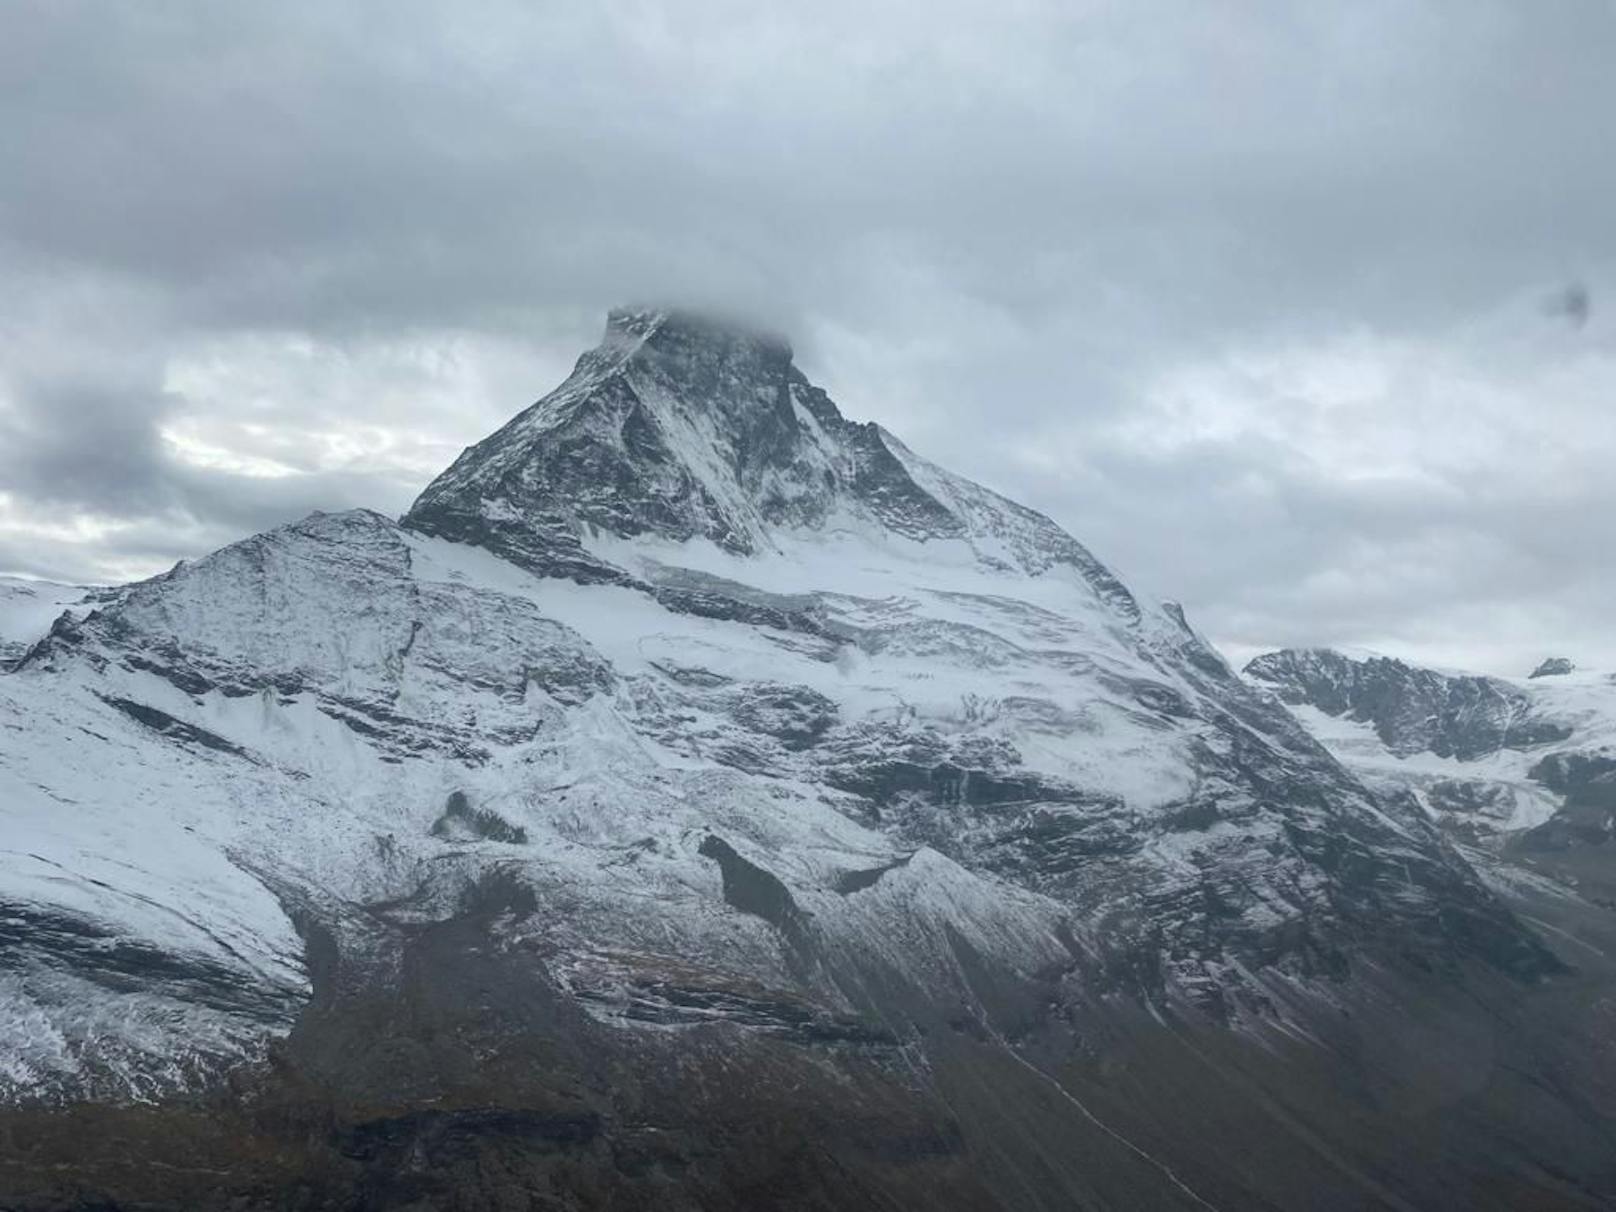 Am Matterhorn entdeckte man eine Granate aus dem zweiten Weltkrieg. (Symbolbild)